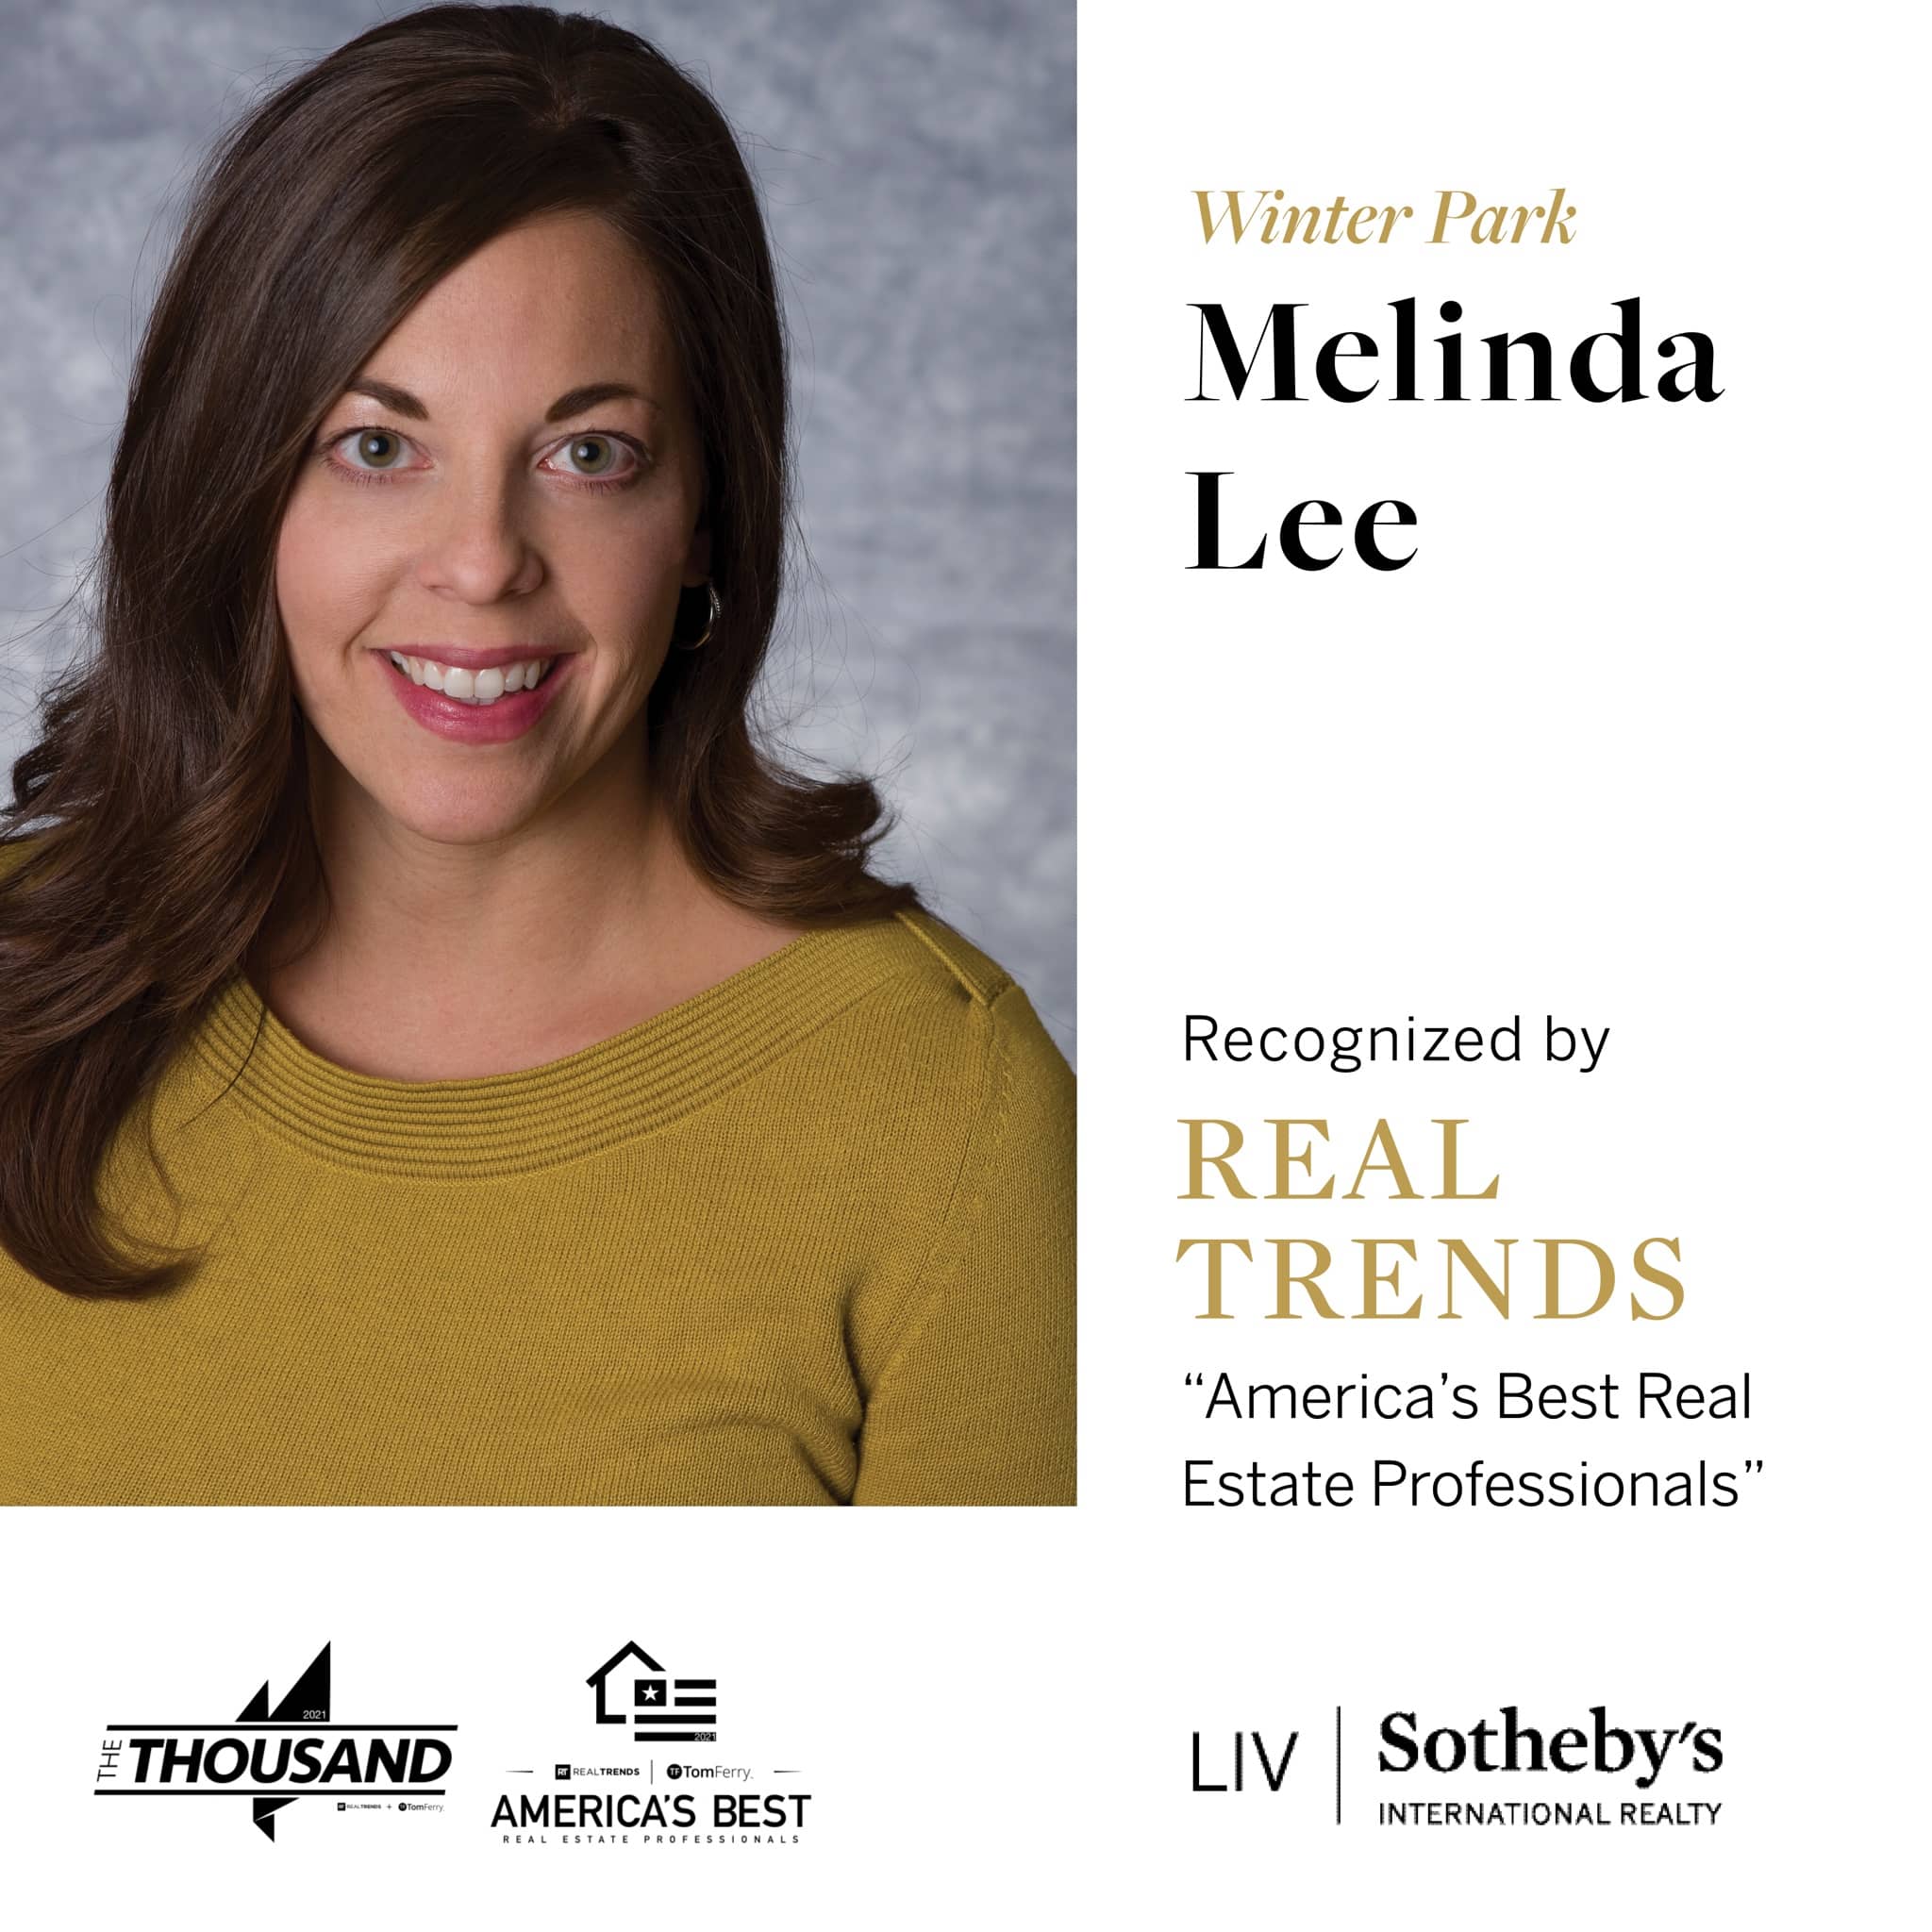 Melinda V Lee Real Trends America's Best Real Estate Professionals LIV Sotheby's